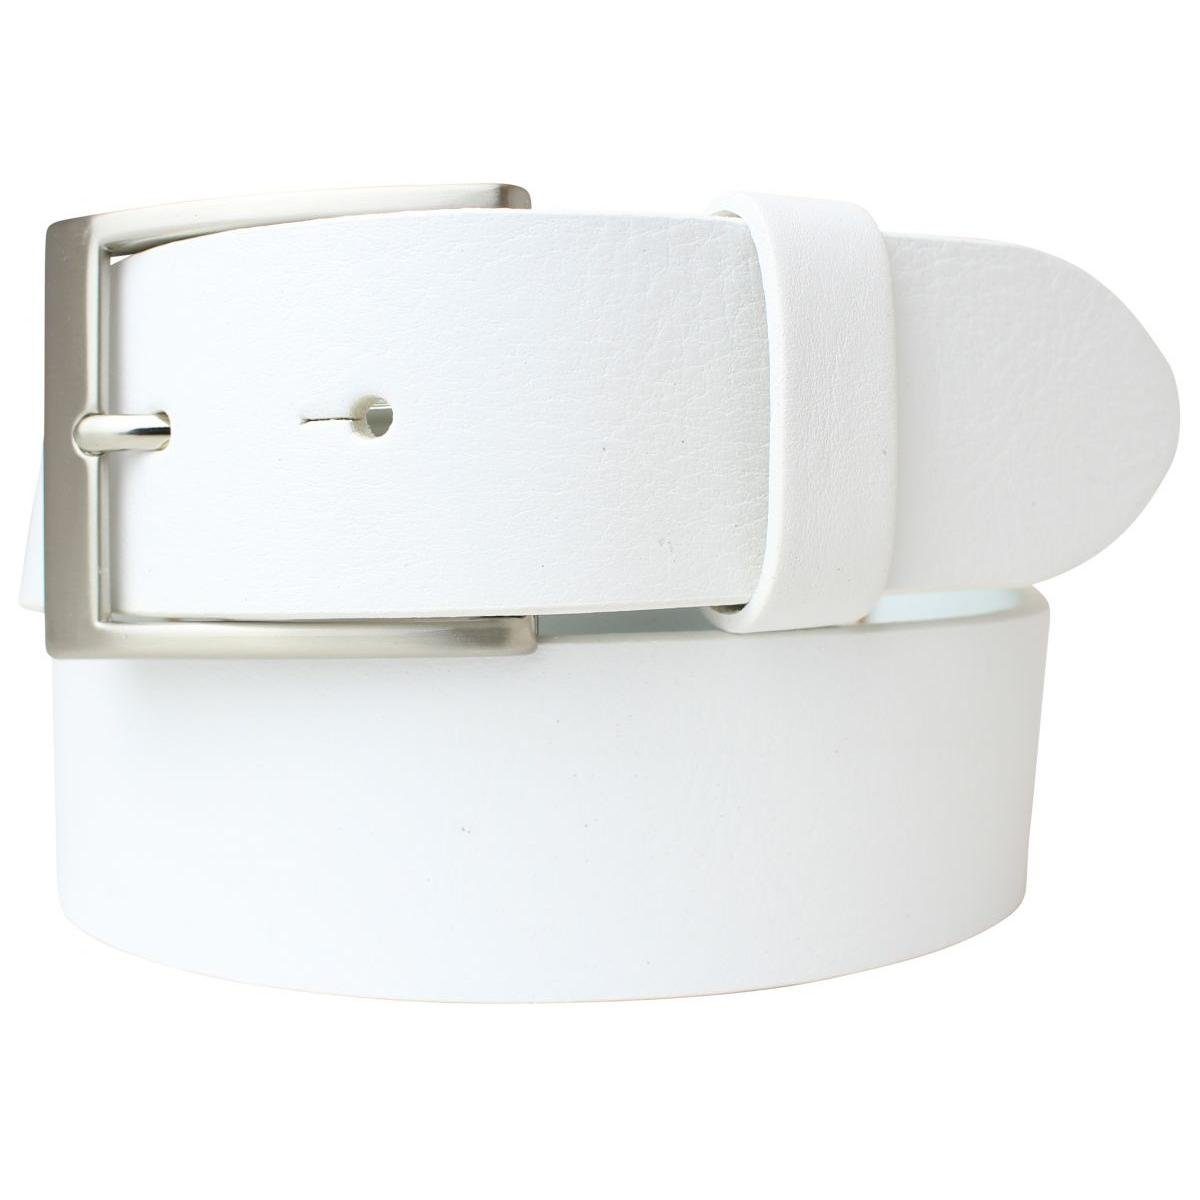 BELTINGER Ledergürtel Jeans-Gürtel aus Vollrindleder 4 cm - Hochwertiger Leder-Gürtel für He Weiß, Silber